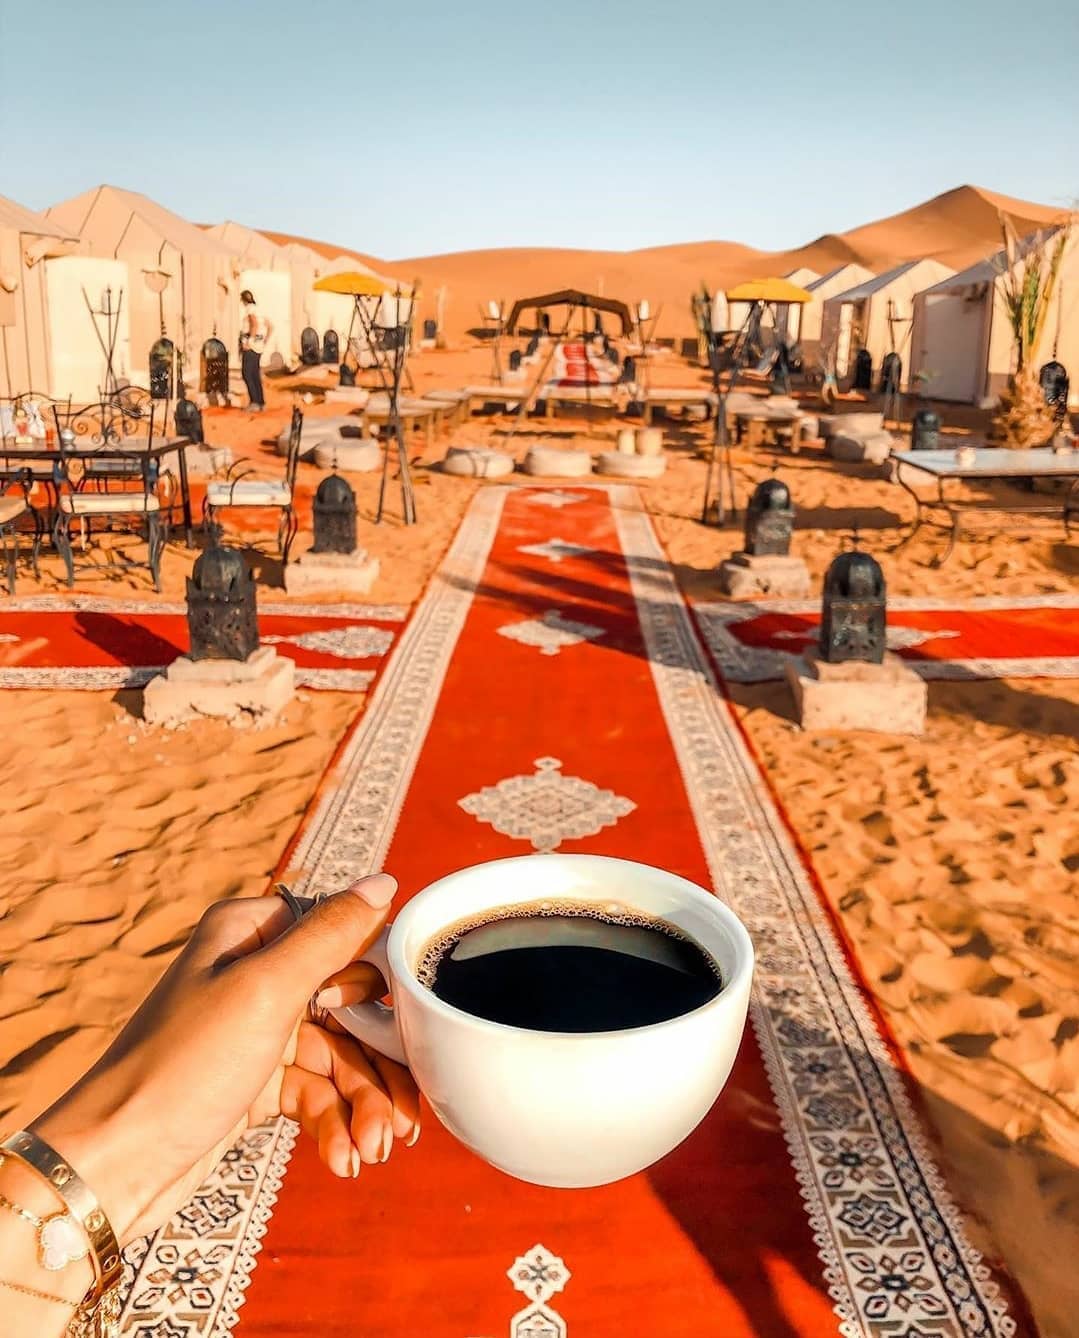 Merzouga desert, 5 days tour